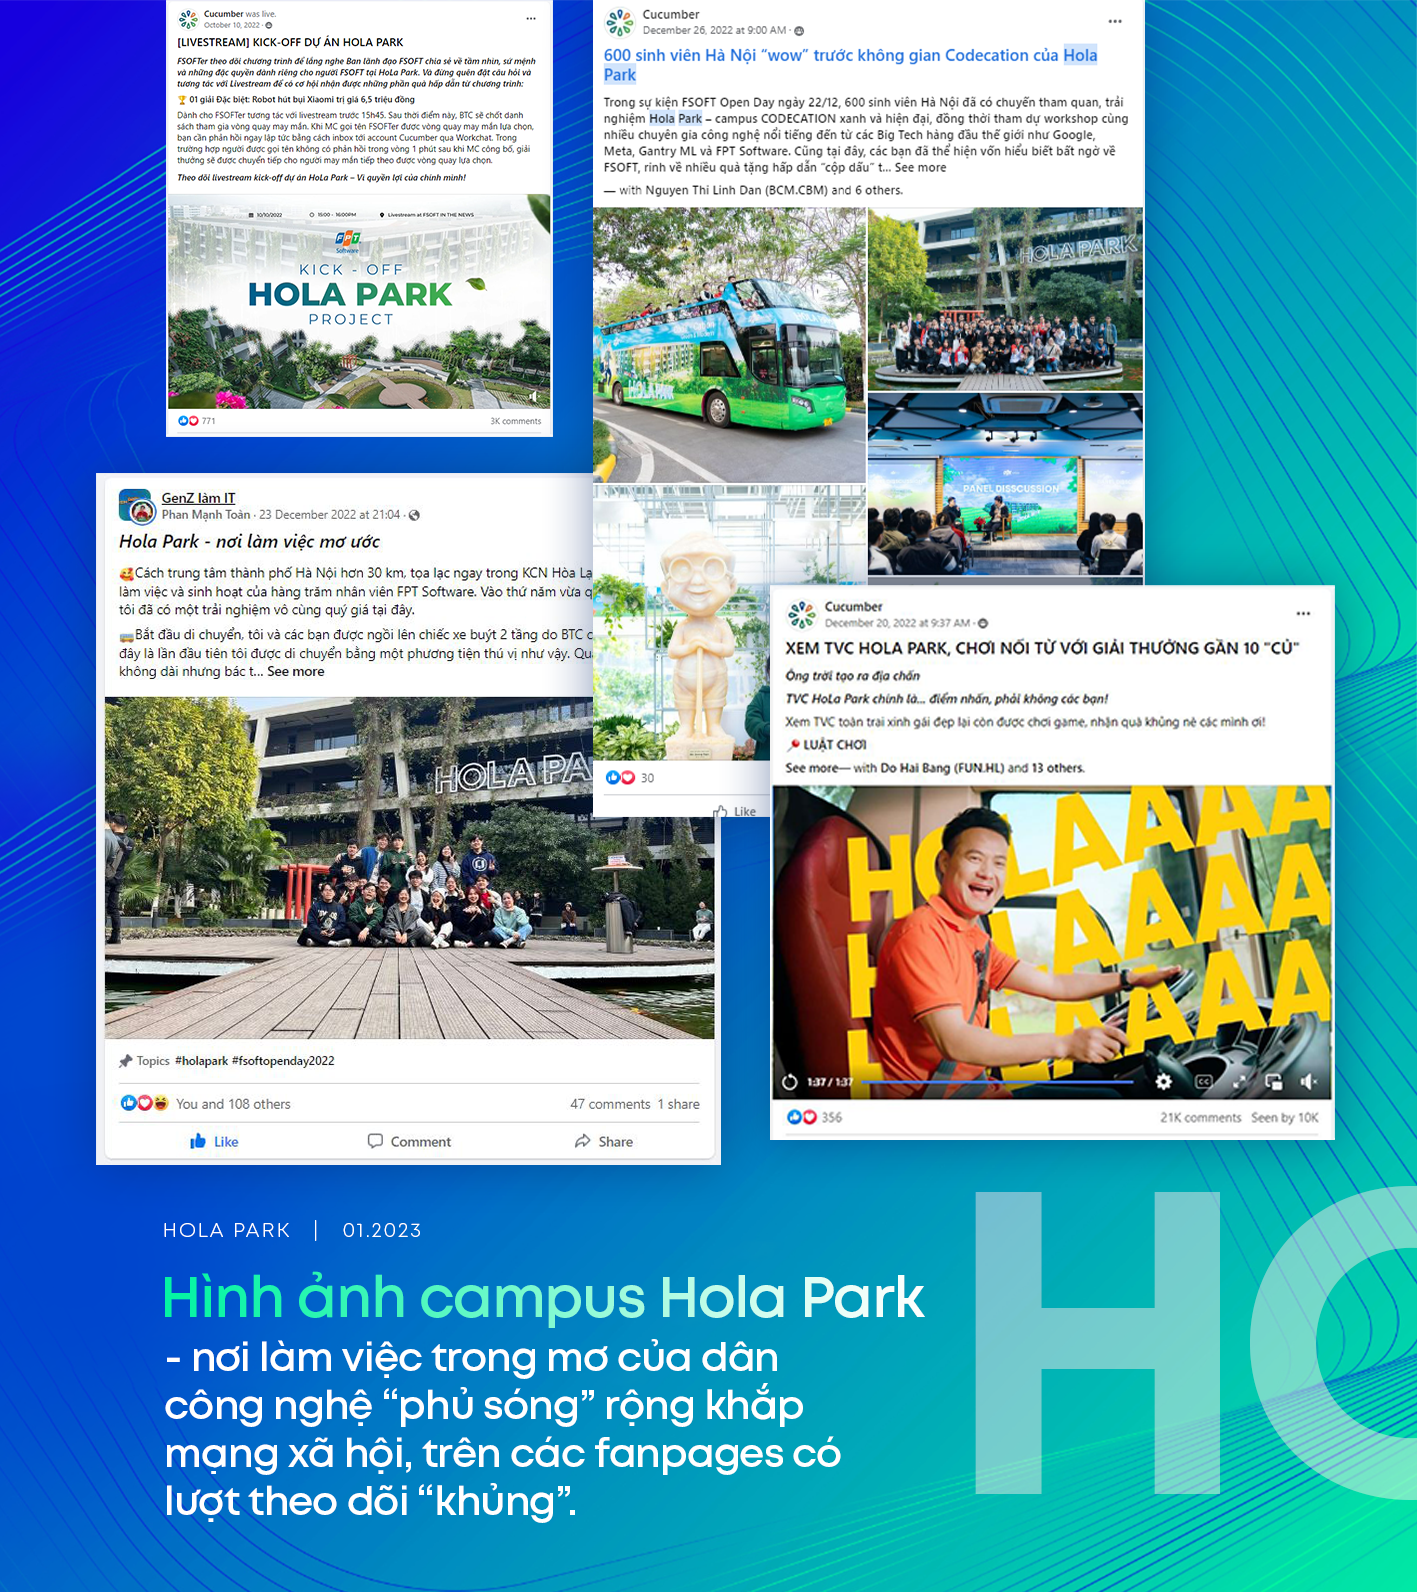 “Hola Park” - chiến dịch khẳng định vị trí FPT Software tiên phong xây dựng campus xanh, siêu tiện ích - Ảnh 4.